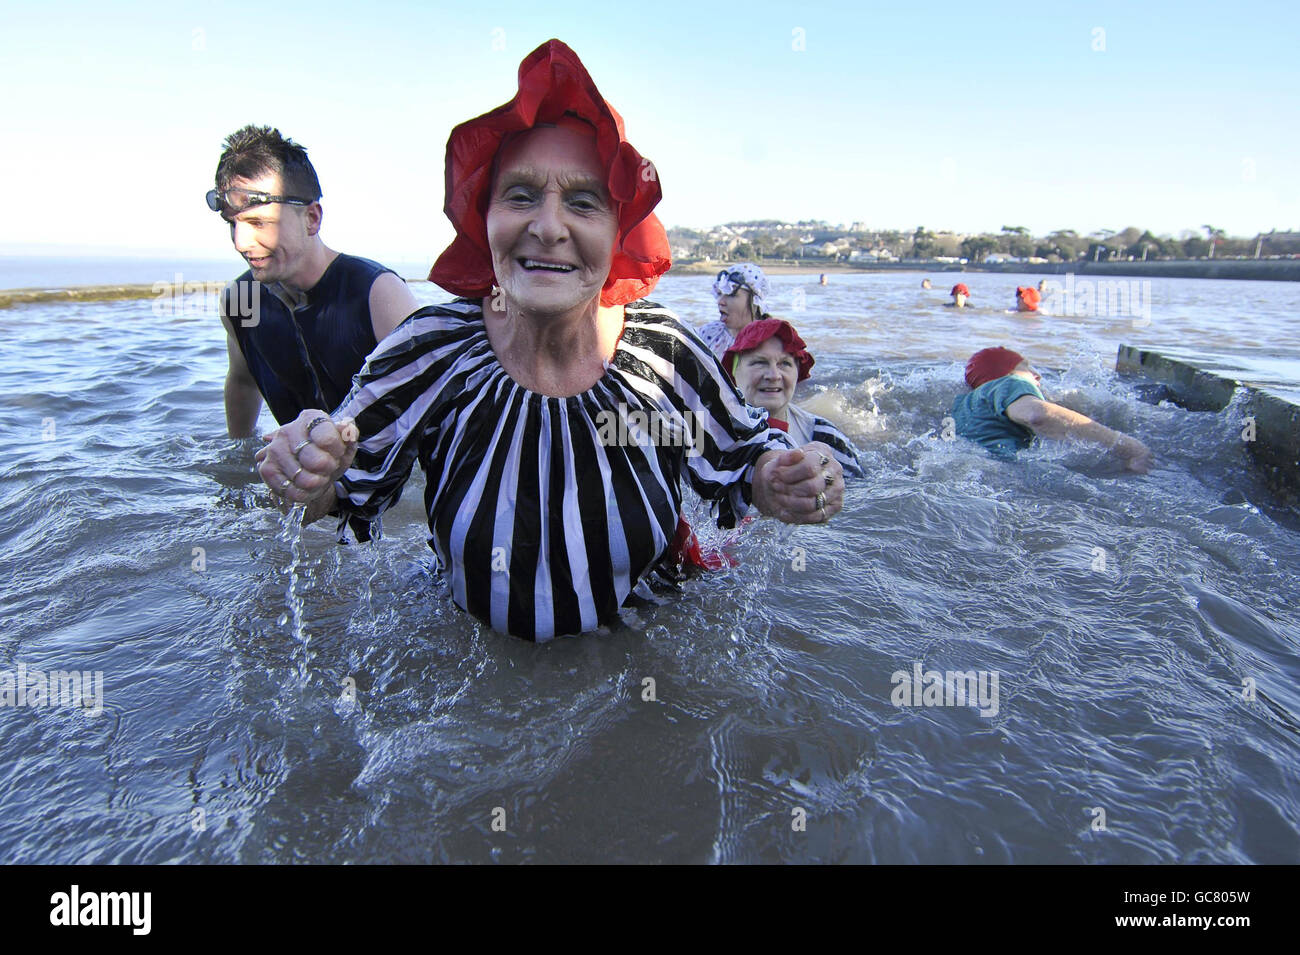 Joyce Peters, 78, aus Clevedon, kommt mit anderen Schwimmern in viktorianischen Badekostümen zusammen, während sie am Neujahrstag in der Marina von Clevedon schwimmen, wo die Temperatur nur knapp über dem Gefrierpunkt liegt. Stockfoto